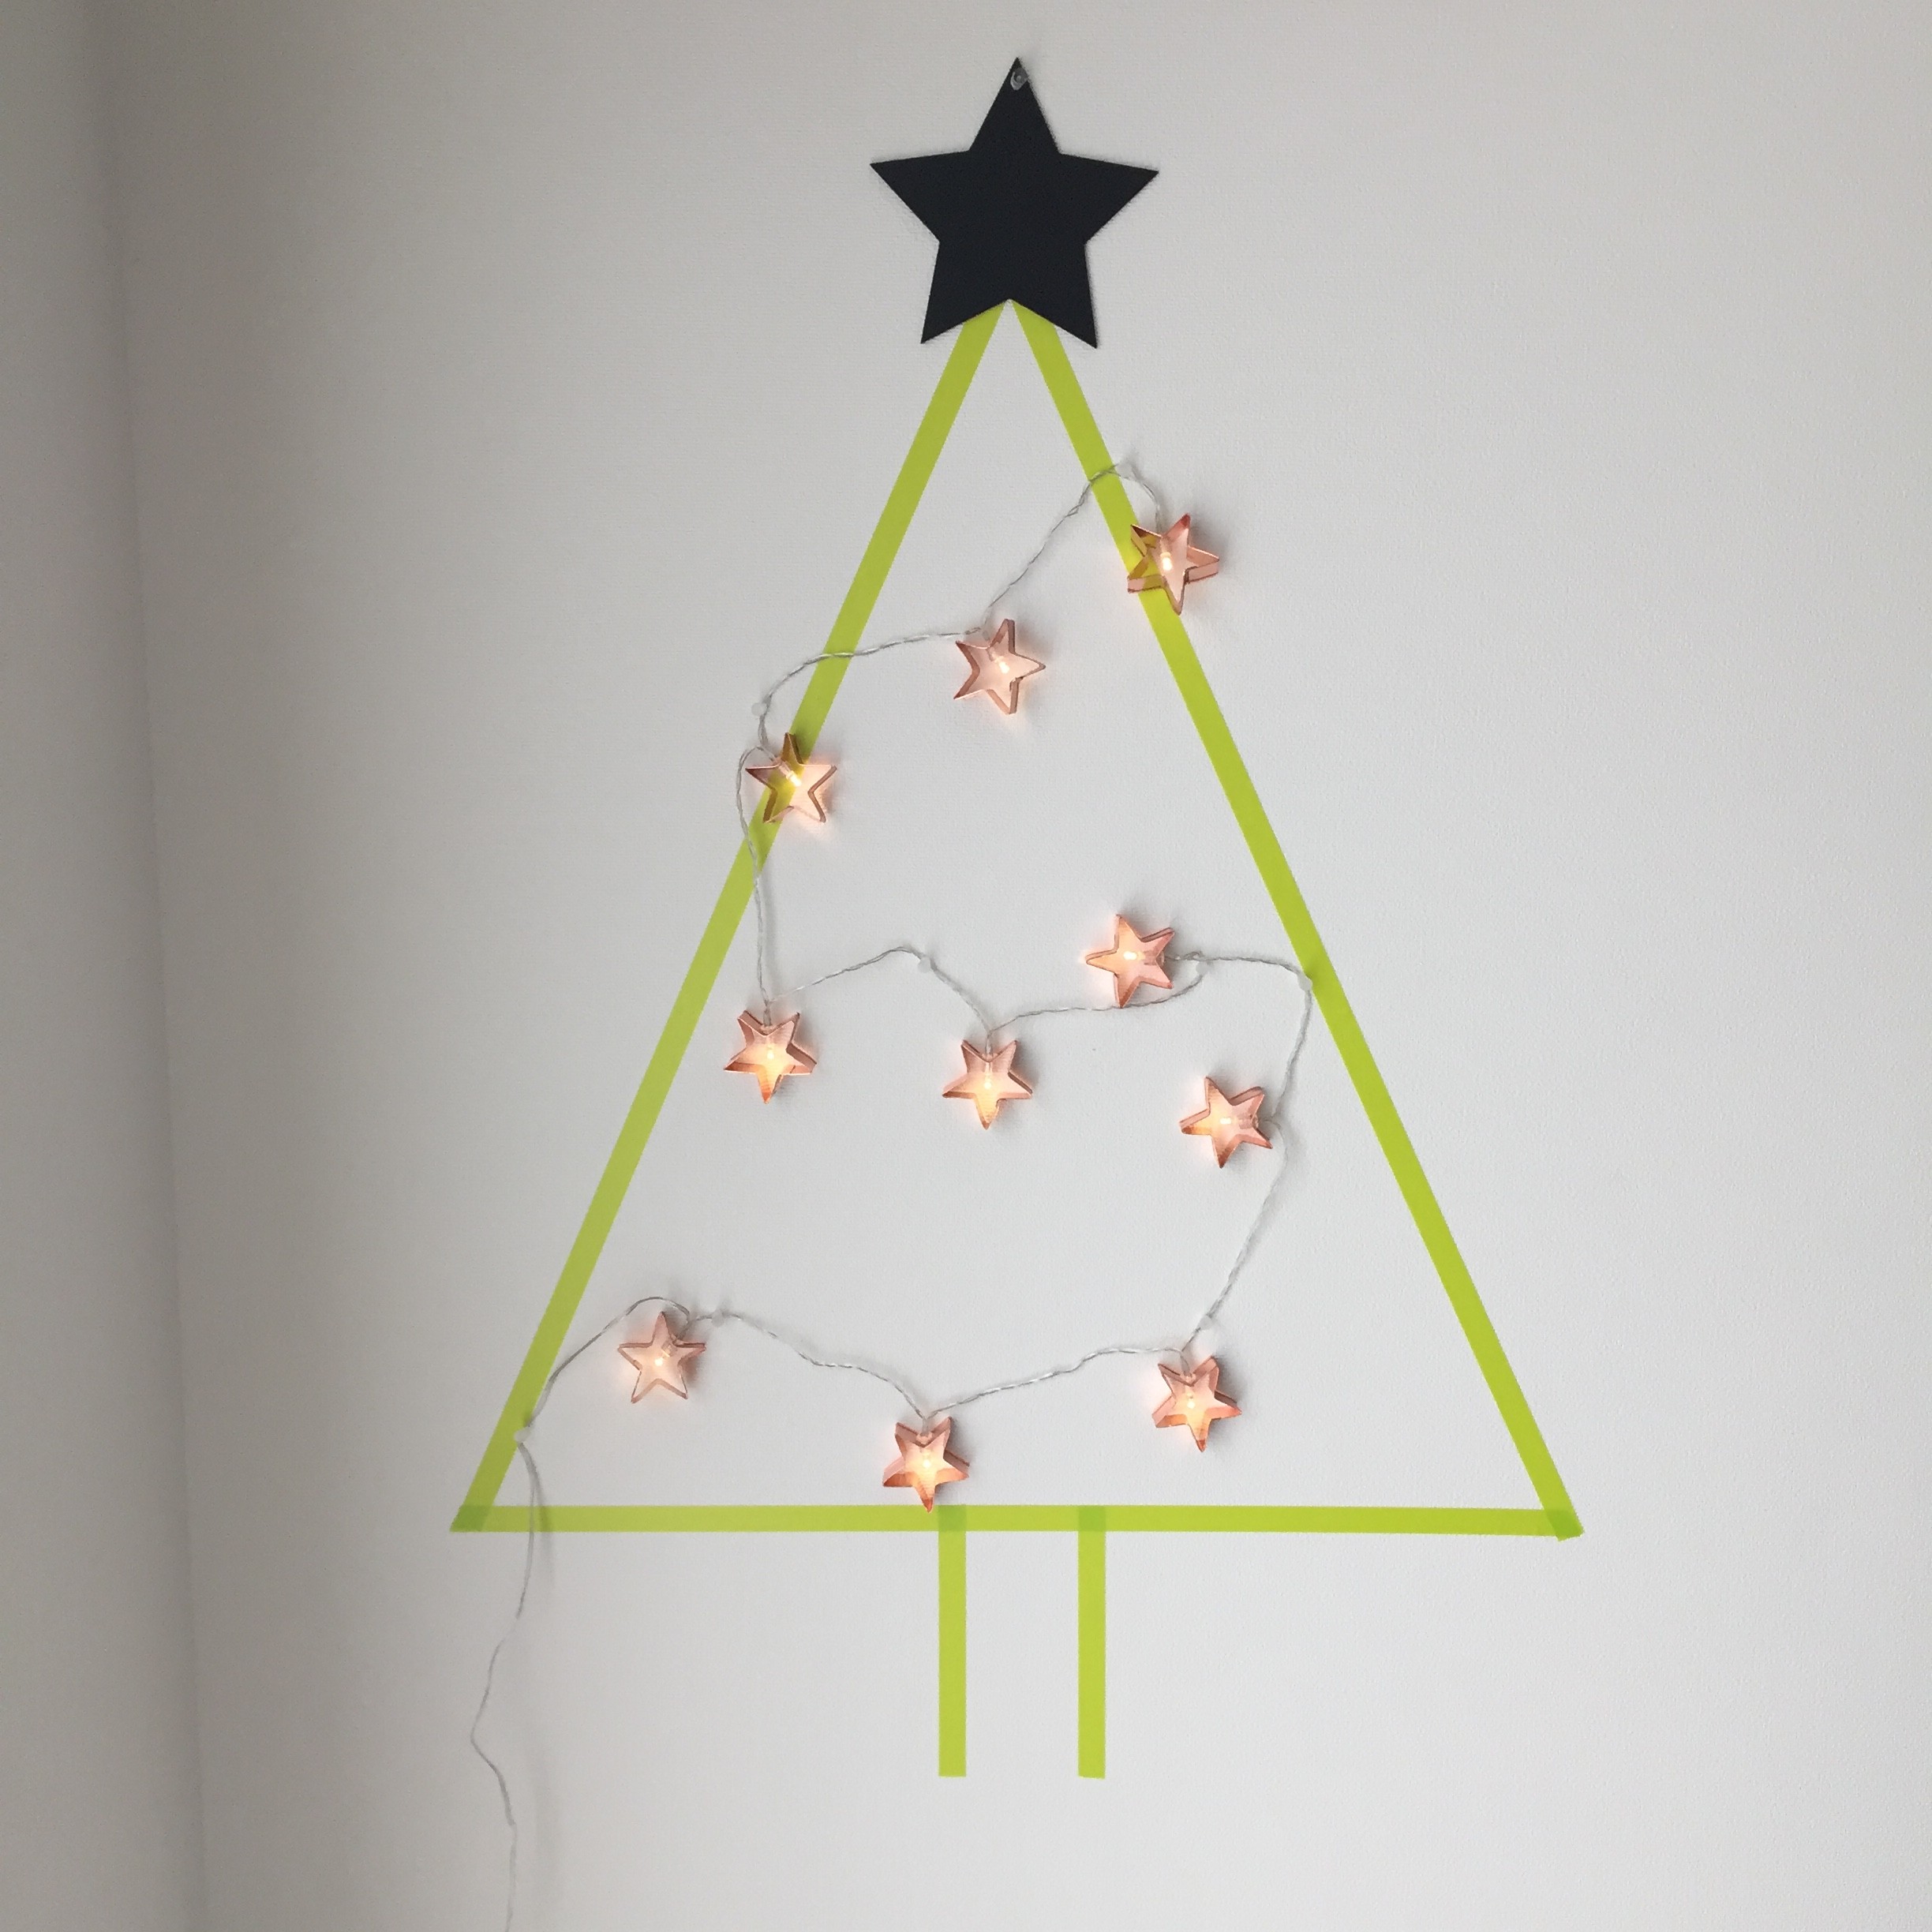 初めてでも簡単。10分でできる。お部屋の空いている壁にマスキングテープで作るクリスマスツリー